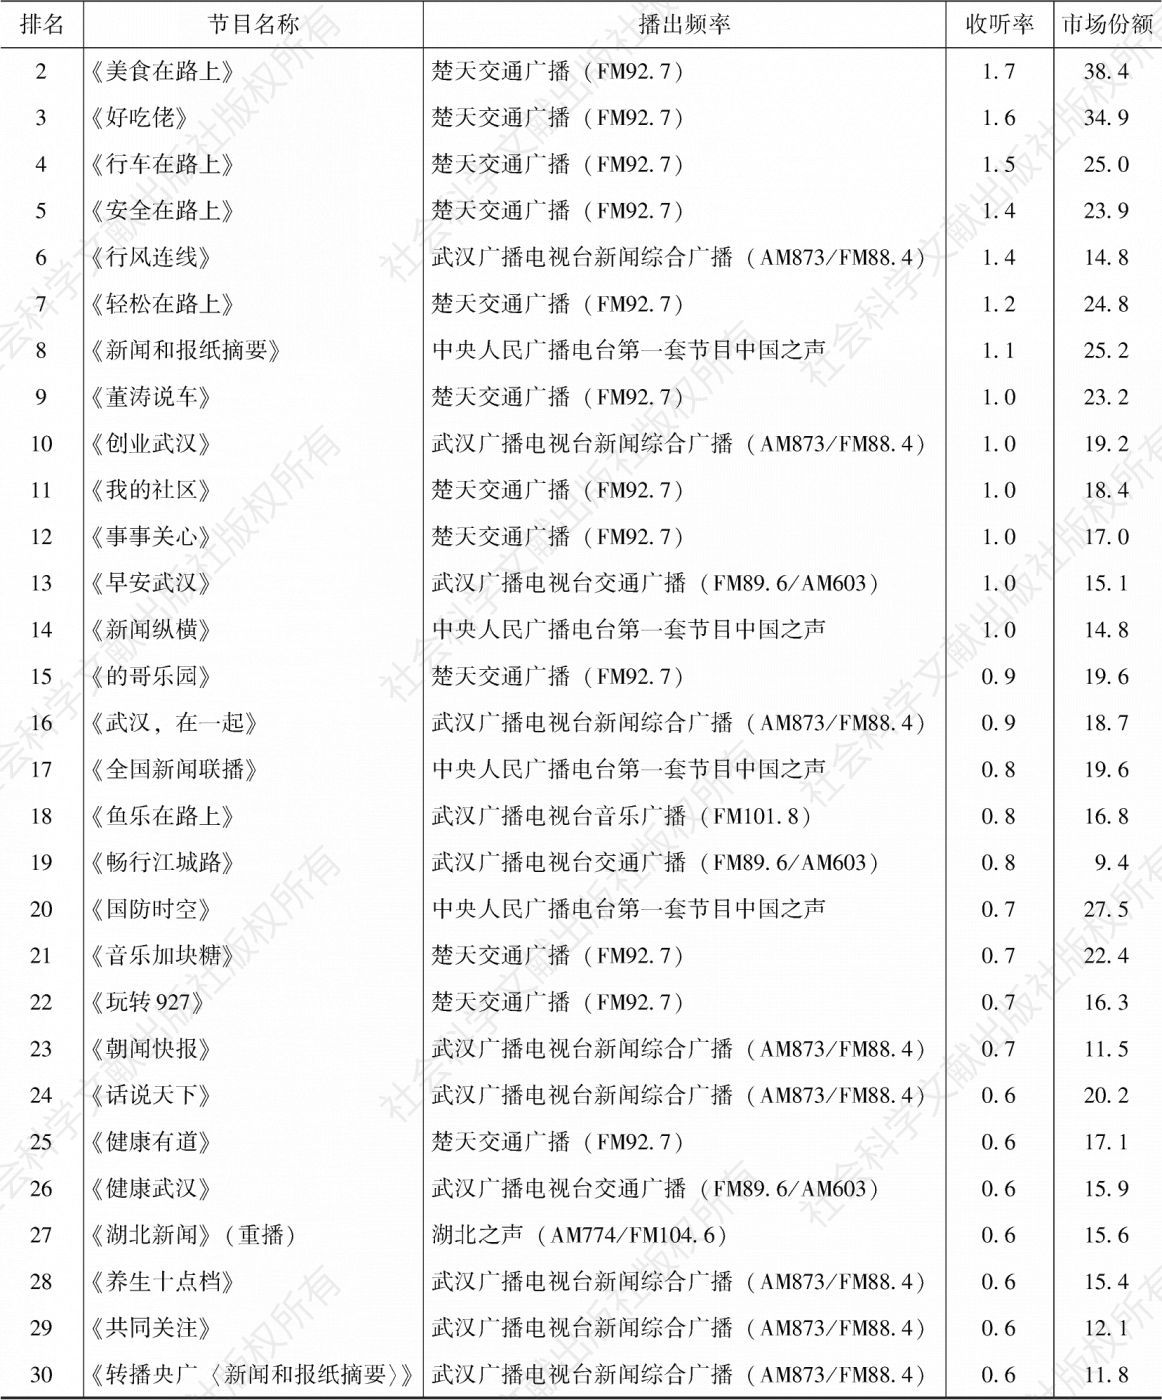 表4.23.7 2020年武汉市场收听率排名前30的节目-续表